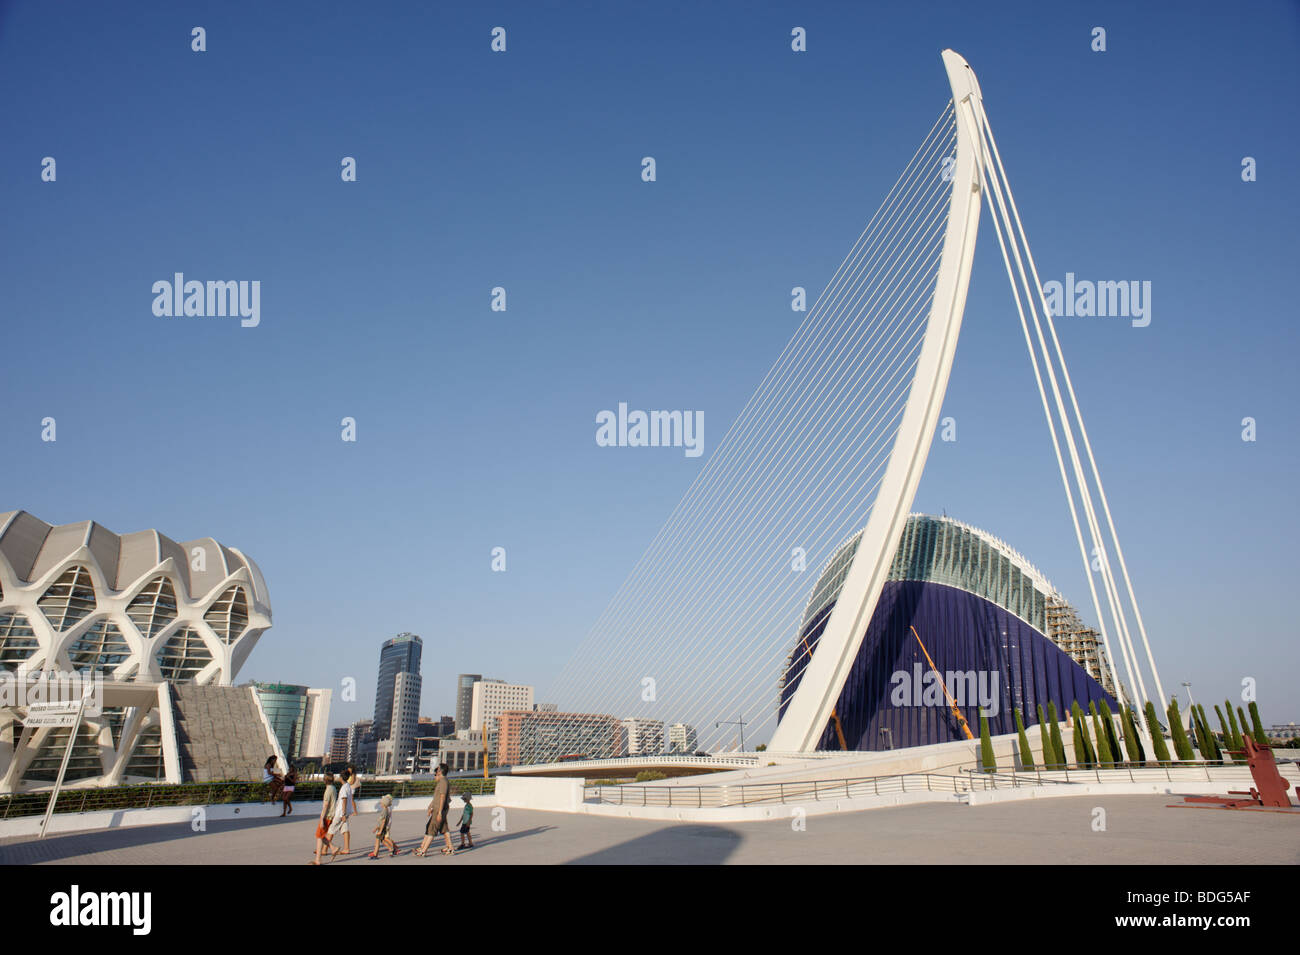 D'Assut ou Bridge (Pont Serreria aka) à Valence conçu par l'architecte Santiago Calatrava. Espagne Banque D'Images